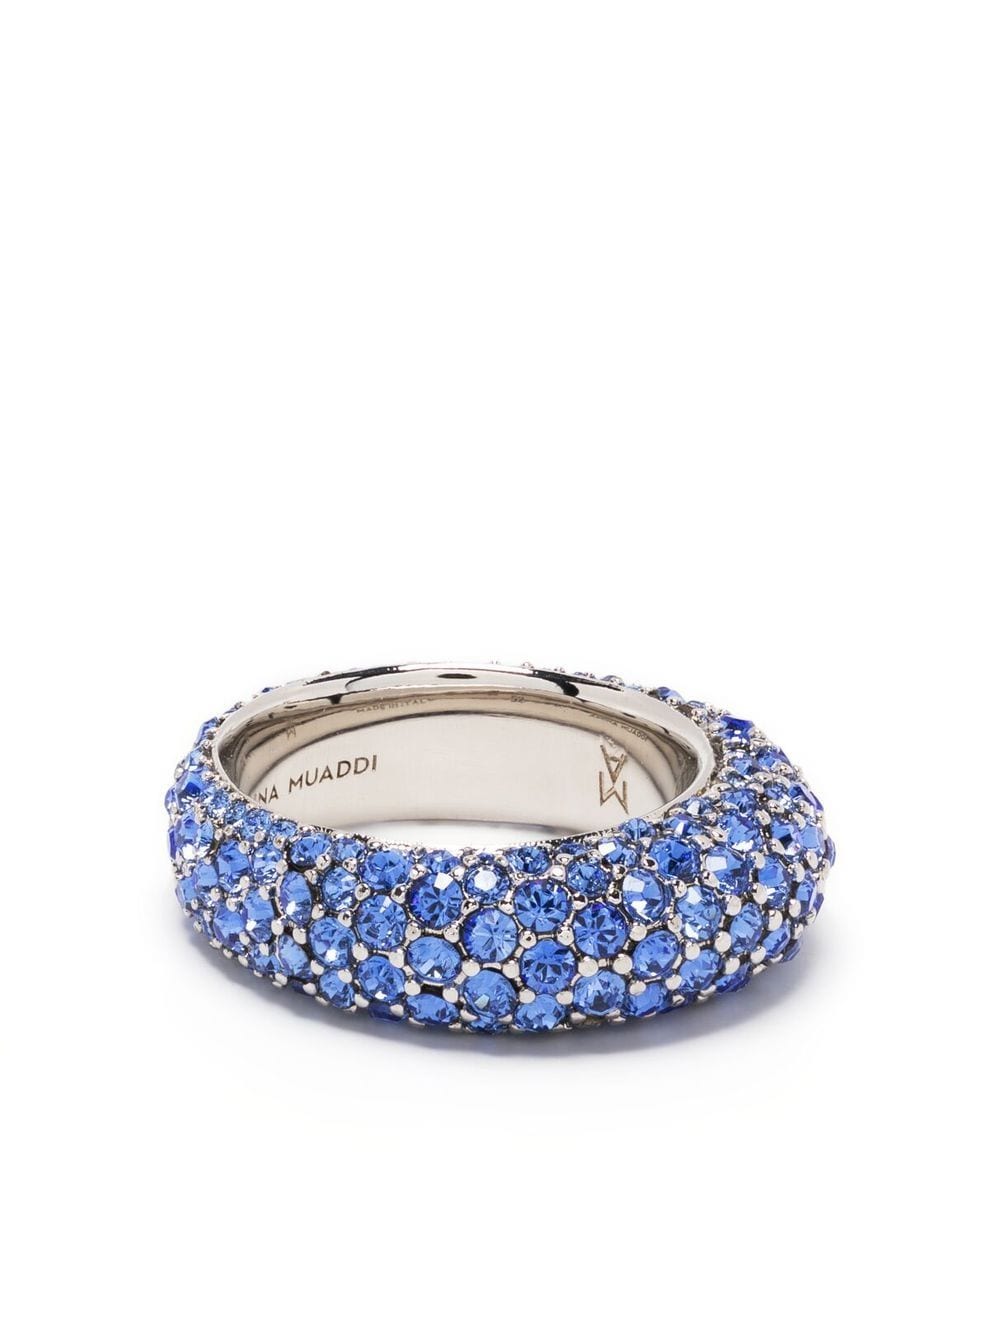 Amina Muaddi Cameron embellished ring - Blue von Amina Muaddi